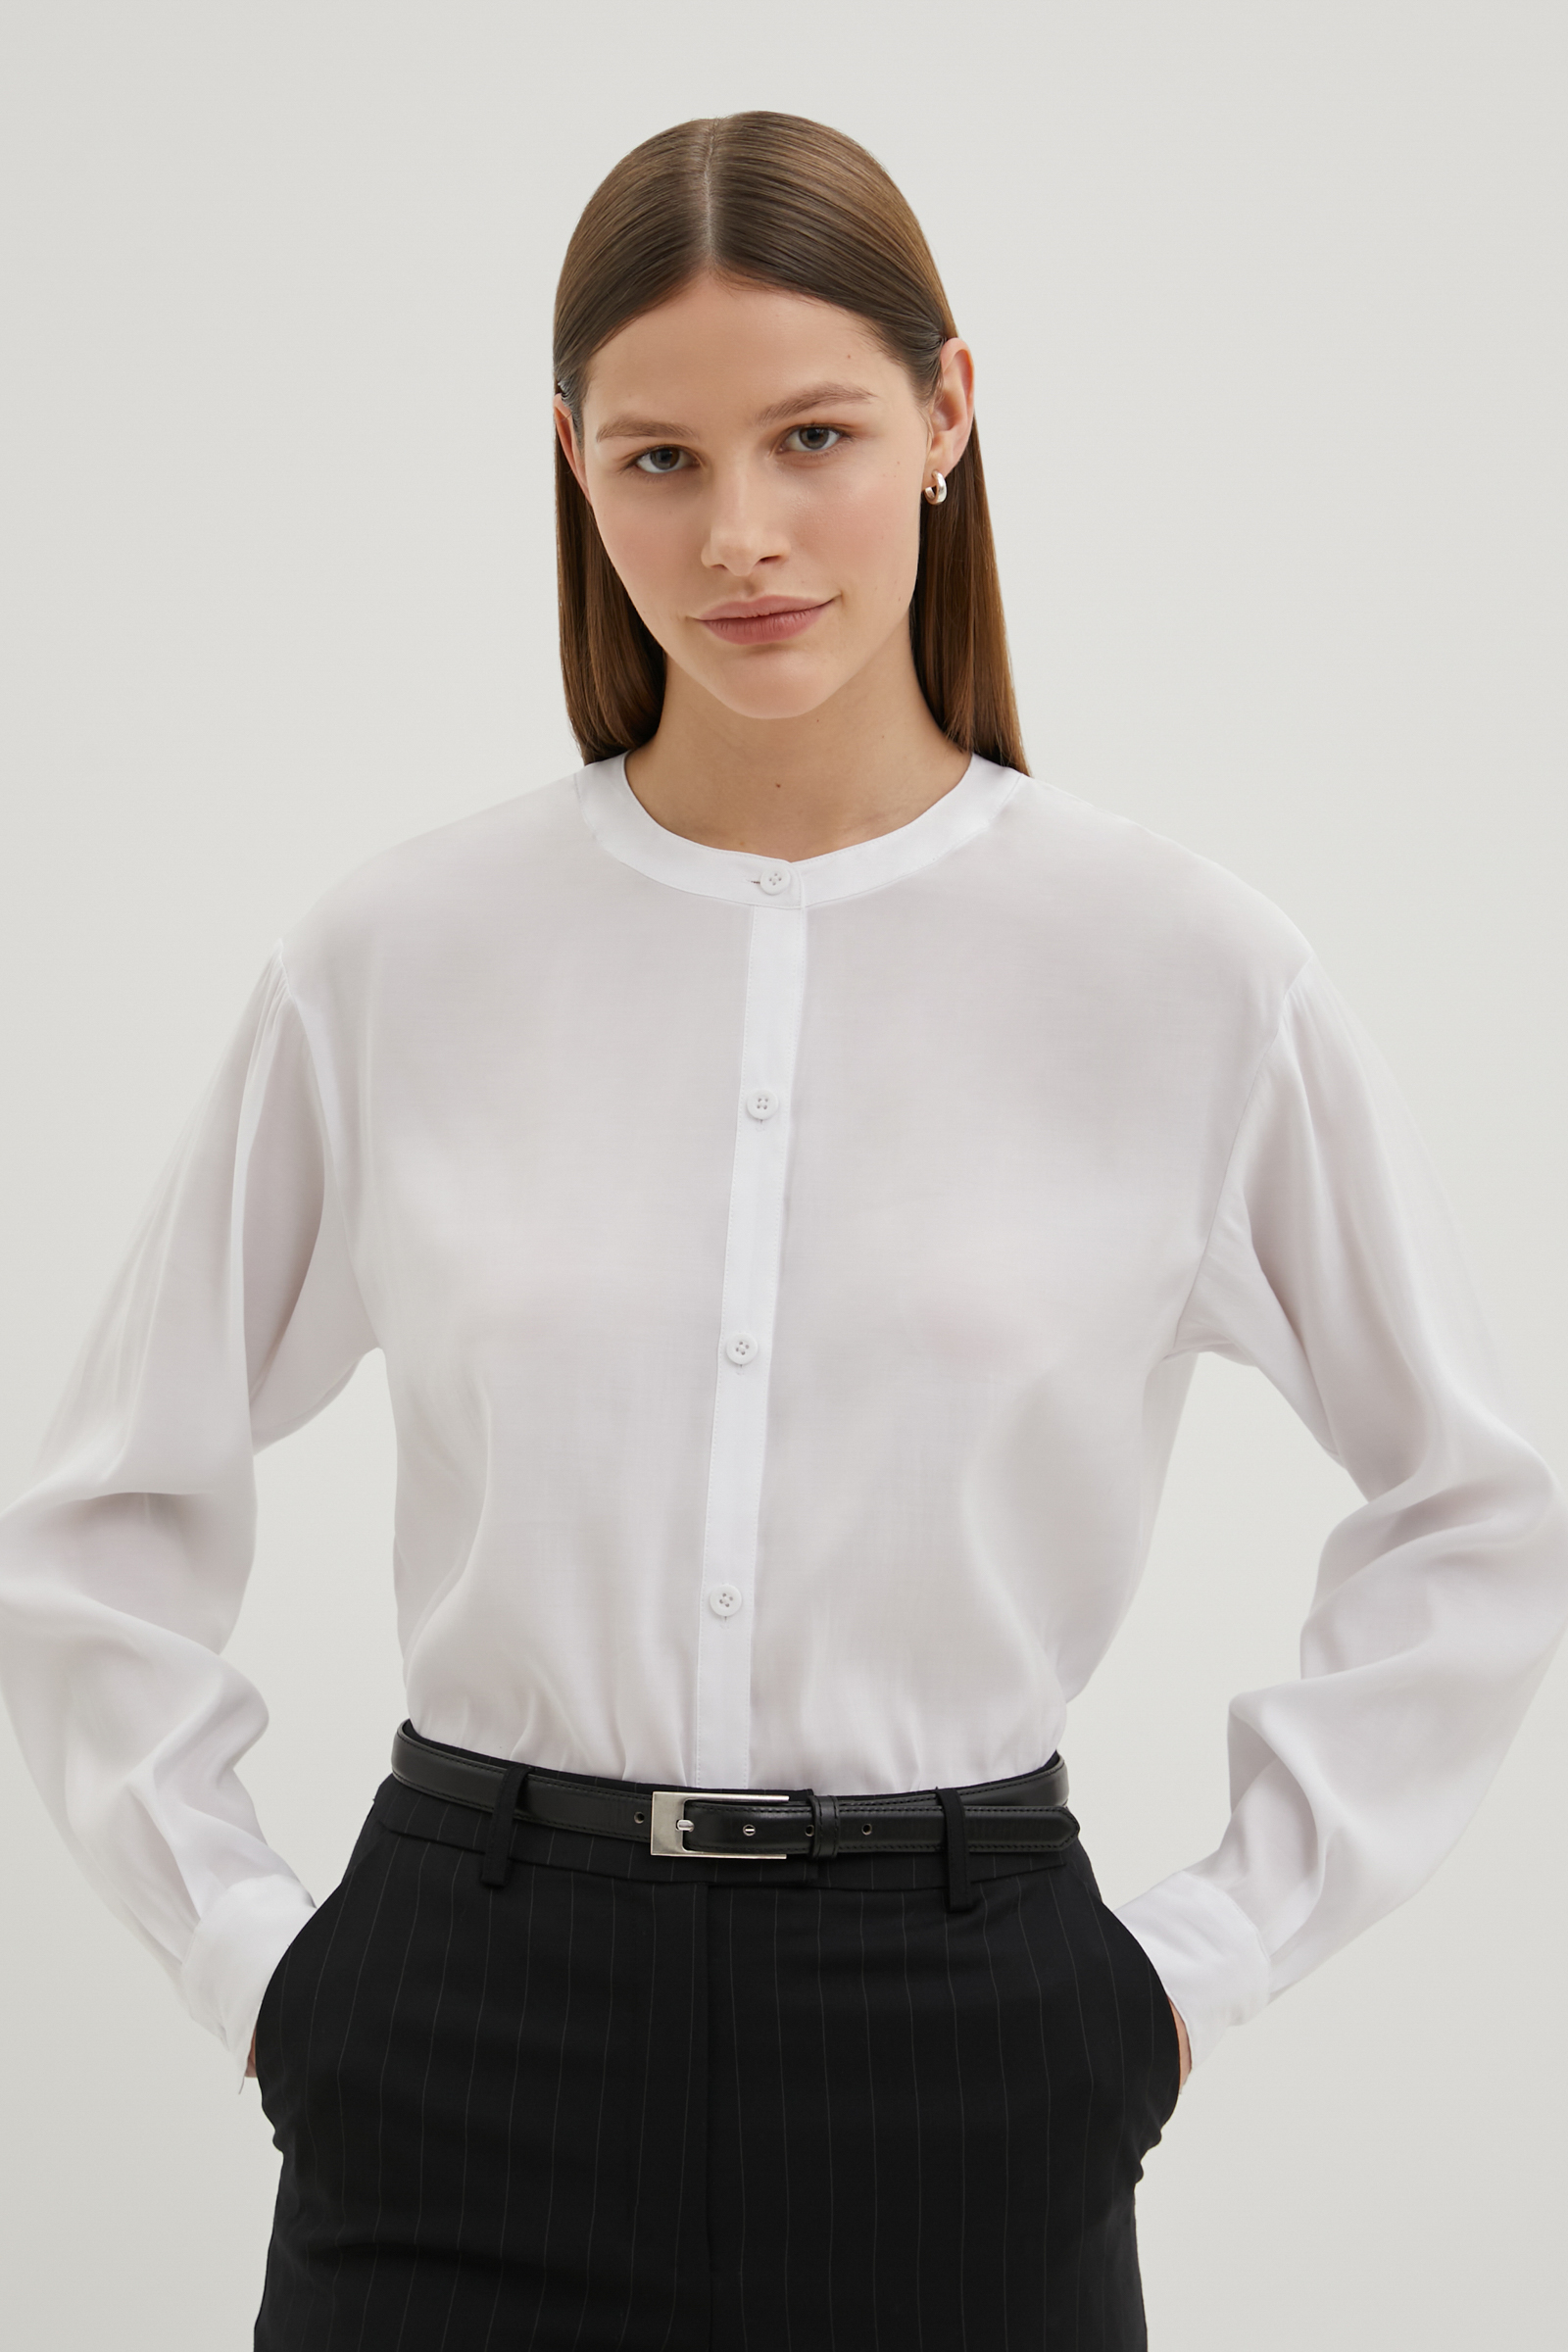 Рубашка женская Finn Flare FBE110163 белая XS